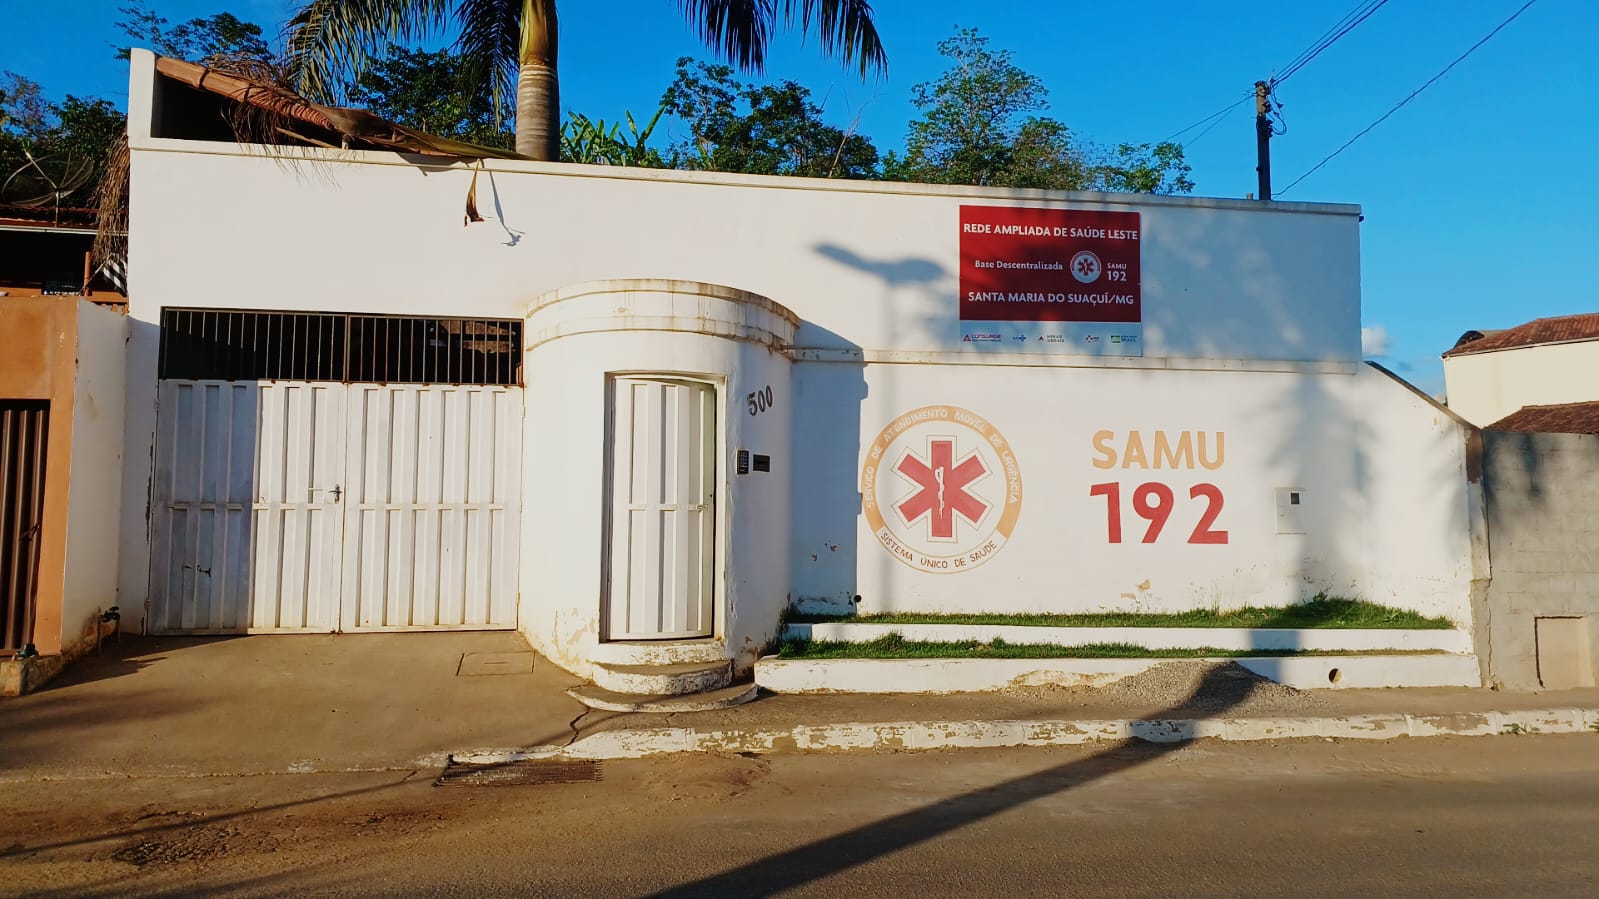 Imagem do Hospital da cidade de Santa Maria do Suaçuí